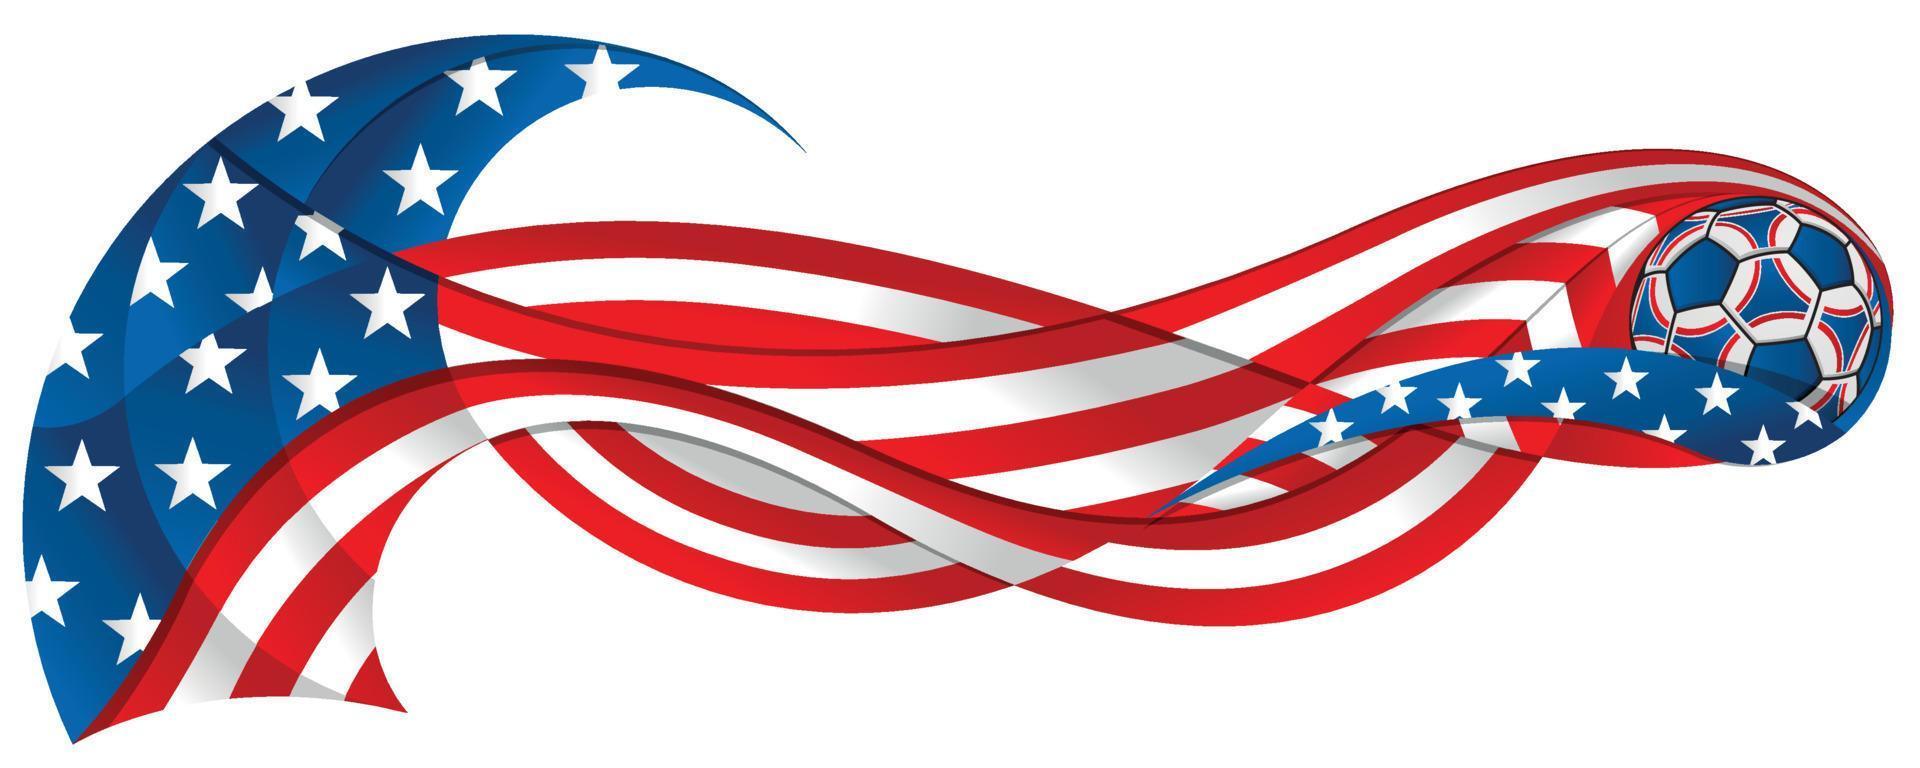 ballon de football rouge bleu et blanc laissant une traînée ondulée aux couleurs du drapeau américain sur fond blanc vecteur